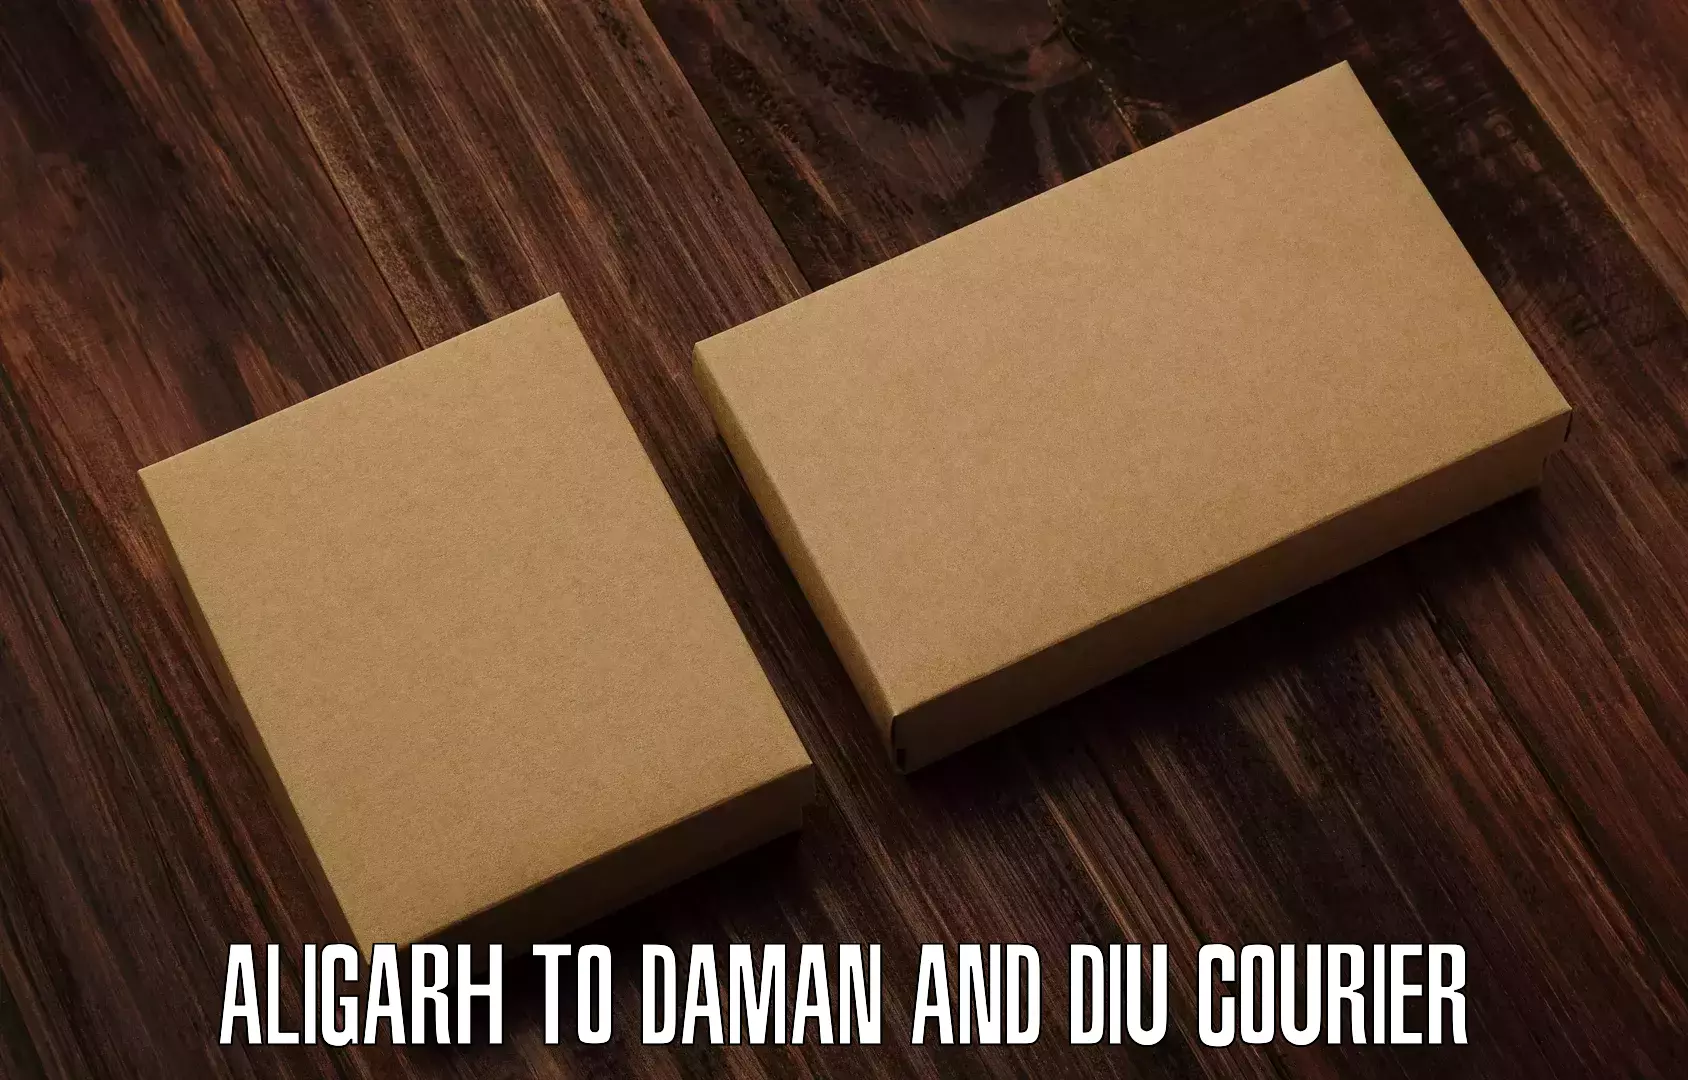 Regular parcel service Aligarh to Diu